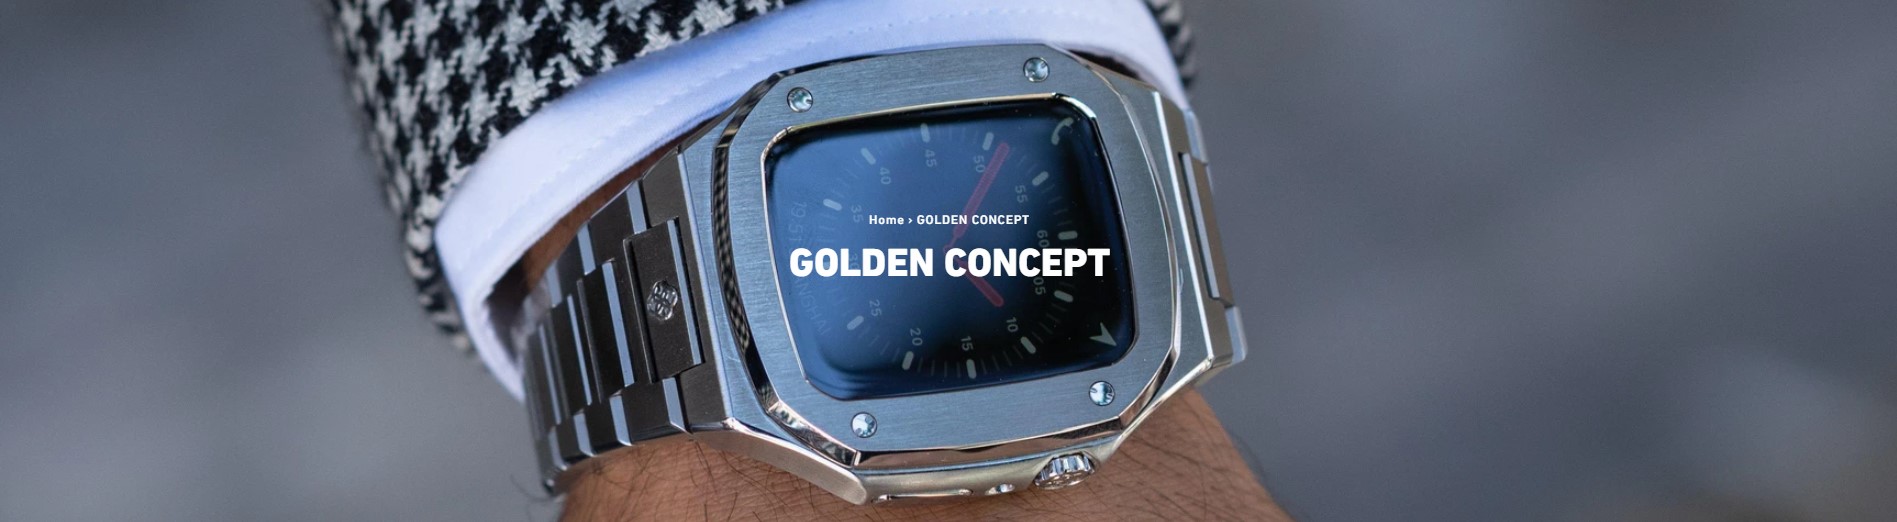 関税無 GOLDEN CONCEPT Apple Watch ケース 45mm DEEP PURPLE (GOLDEN